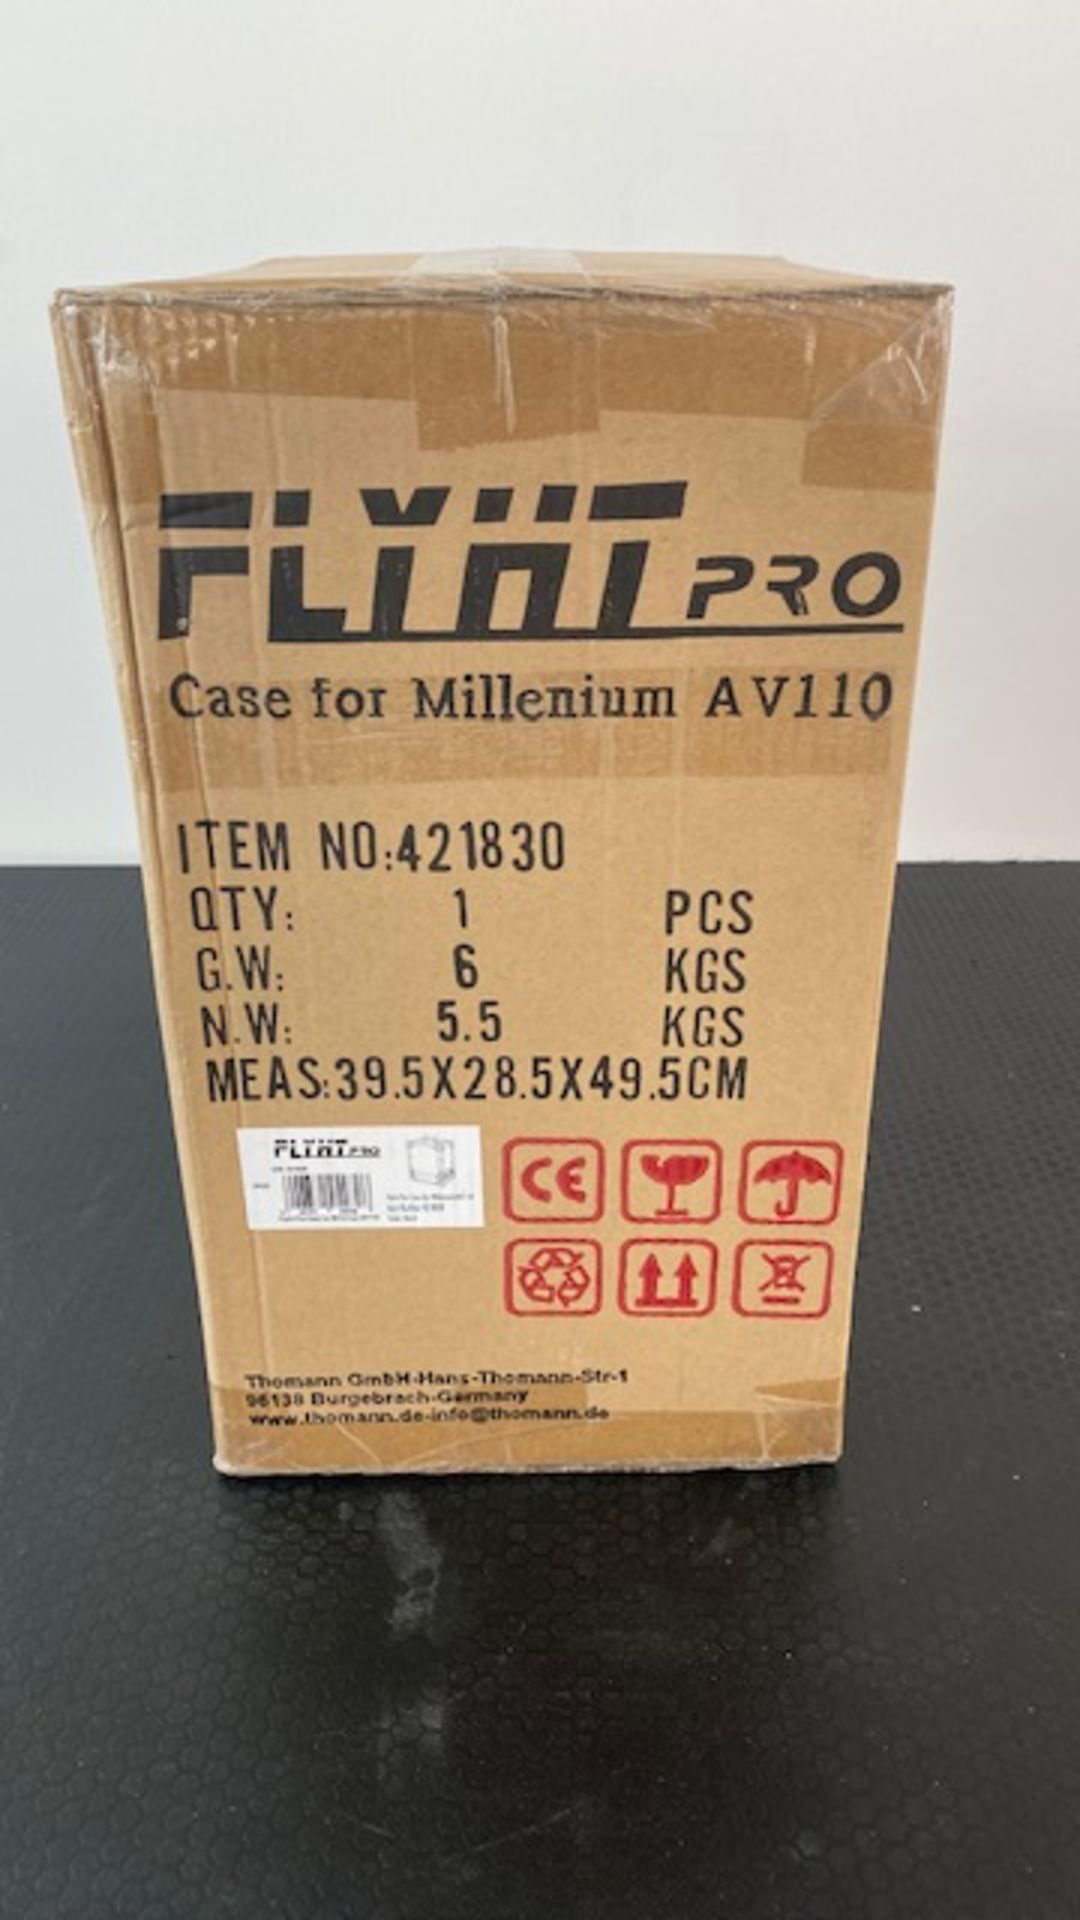 1 x FLYHT PRO Flight Case For Millenium AV110 - New / Unopened - Ref: 936 - CL581 - Location: - Image 2 of 6